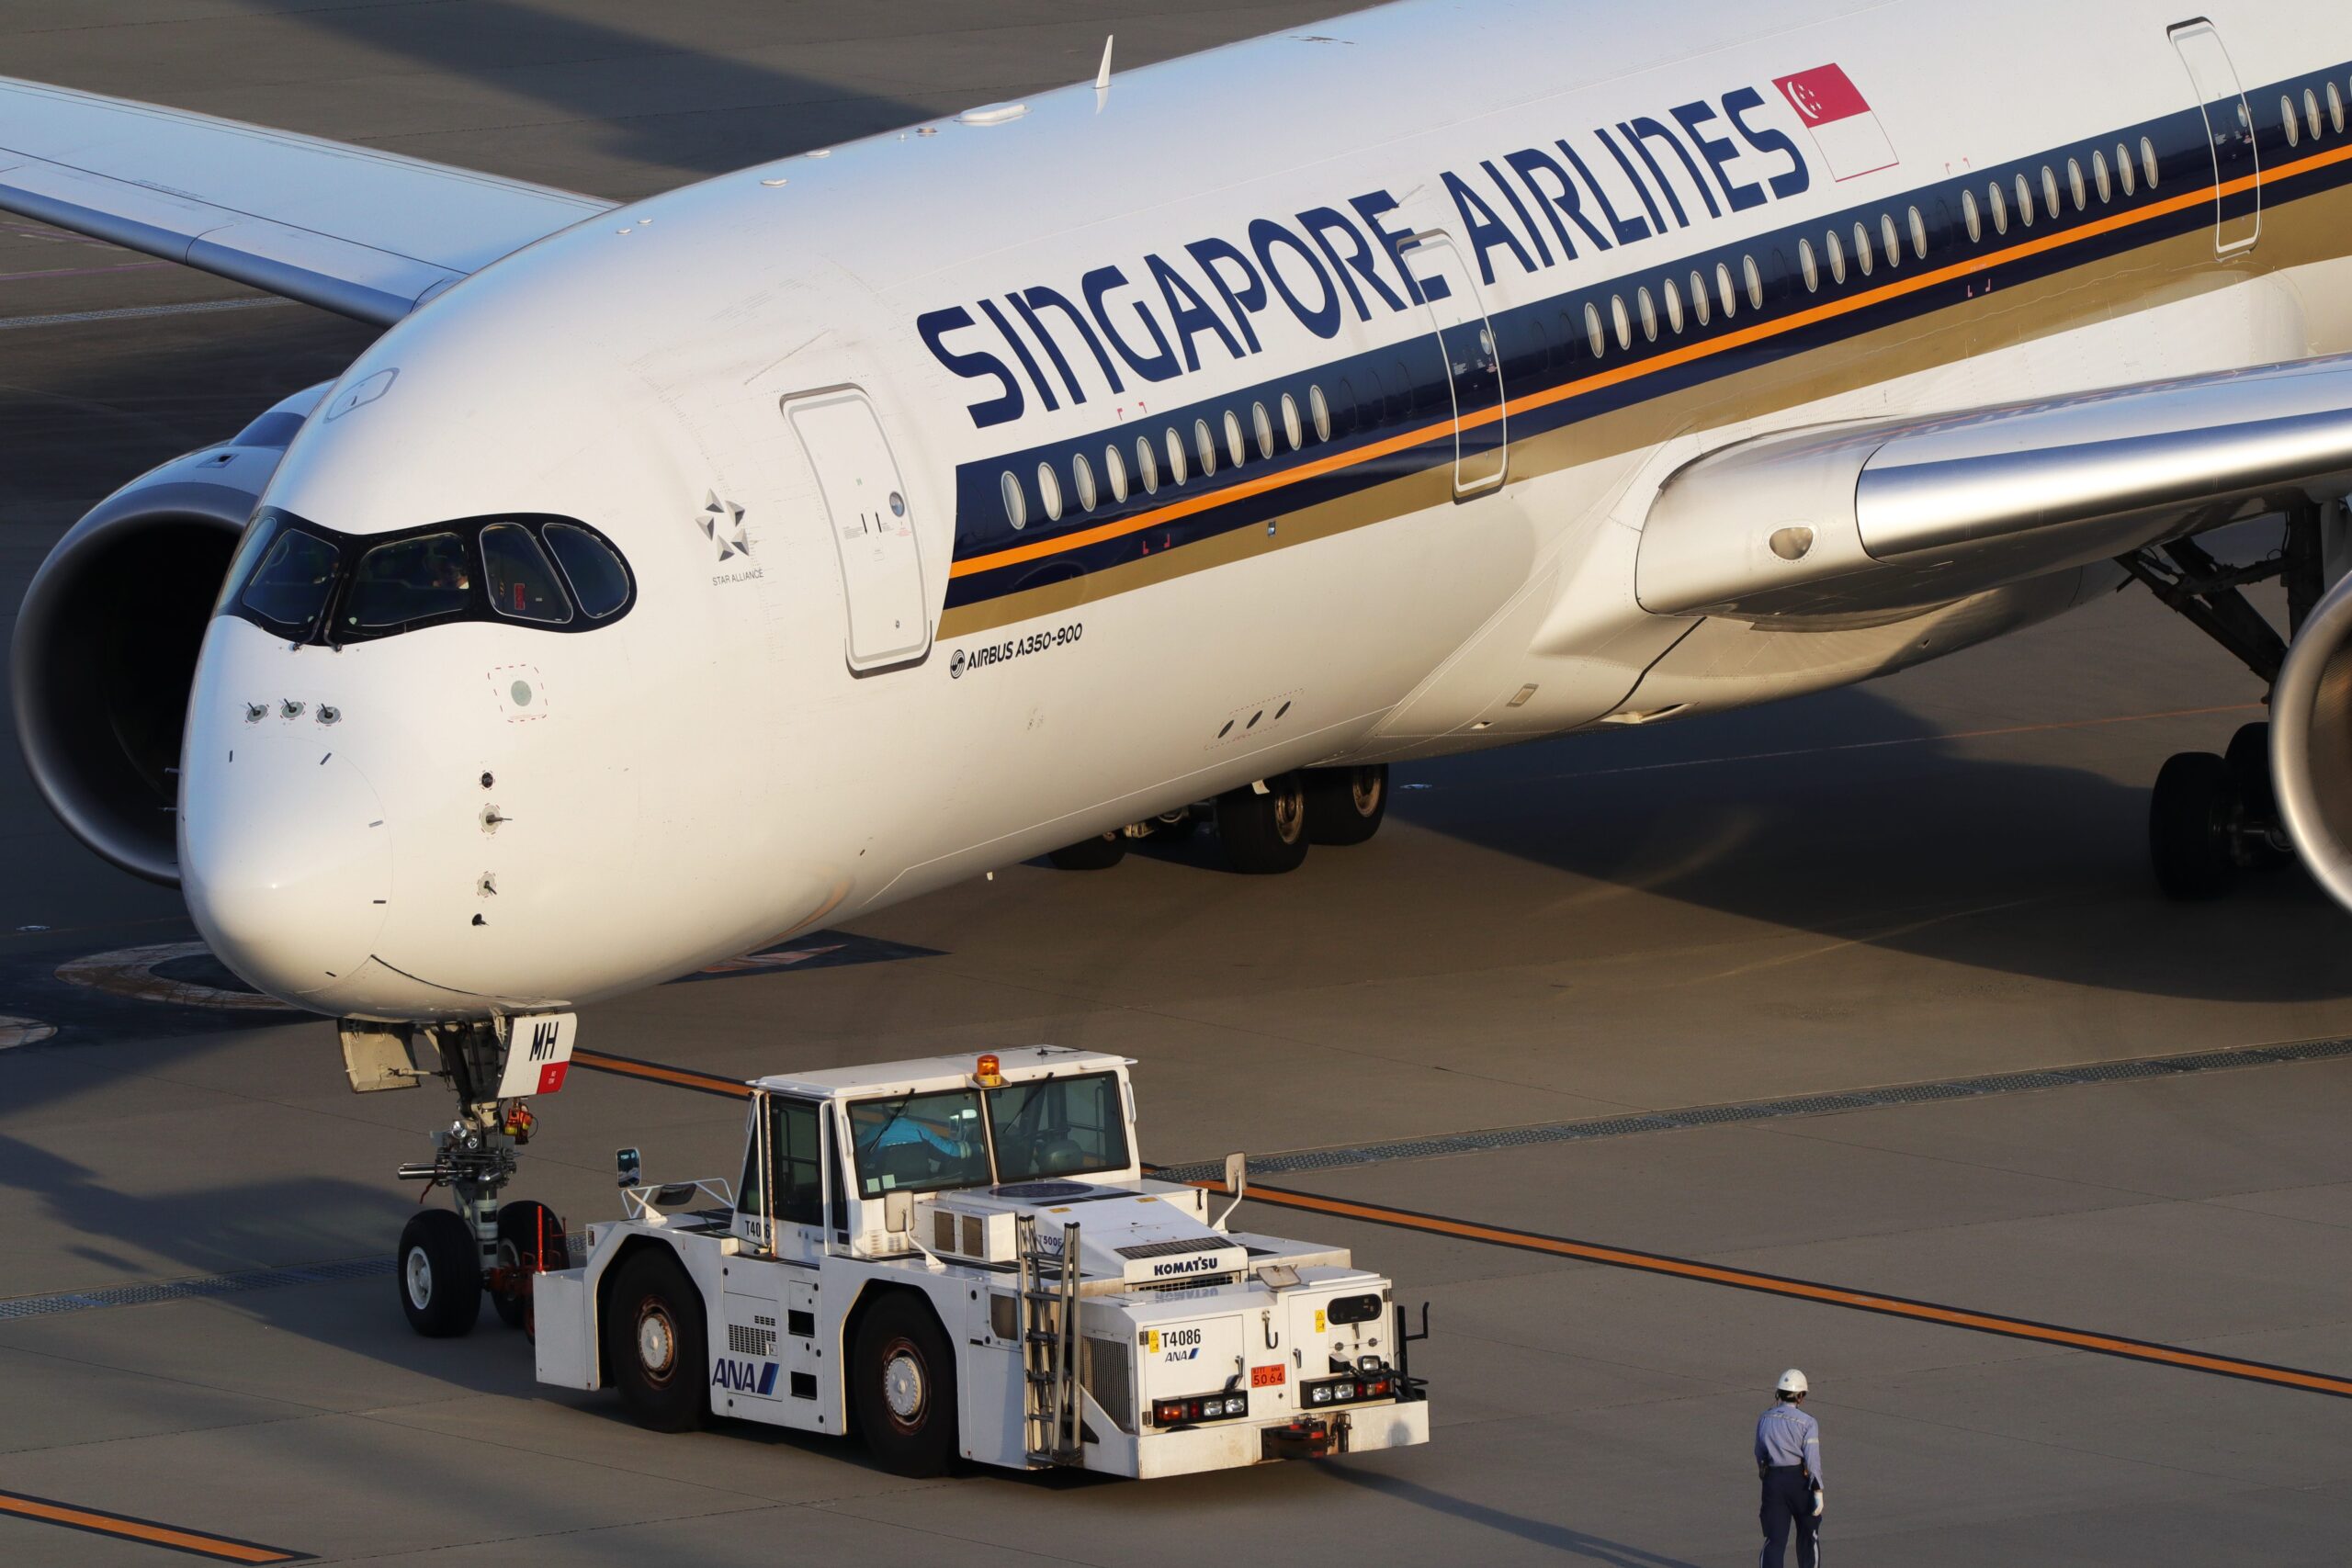 Singapore Airlines verzorgt de langste vlucht ter wereld tussen vliegveld Singapore Changi en JFK in New York, van ongeveer 19 uur.